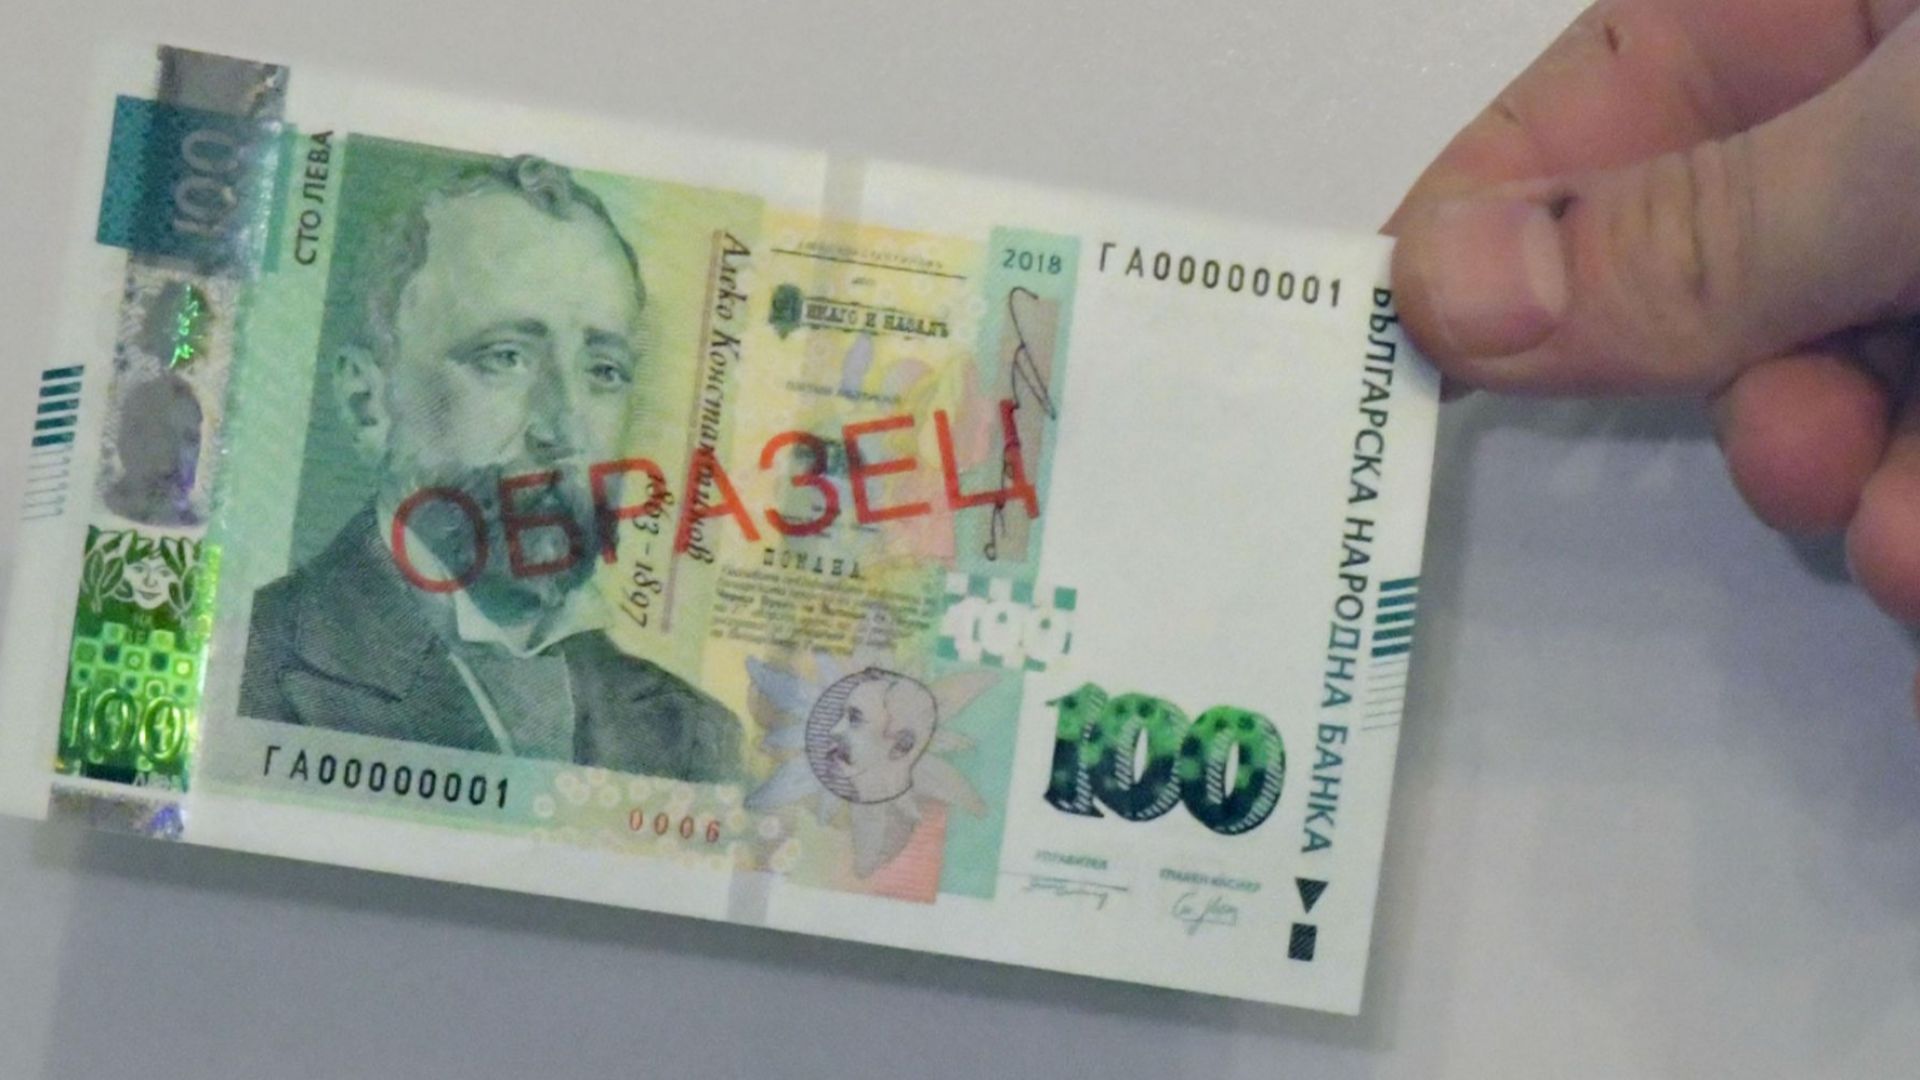 Полицията издирва мъж пазарувал с фалшиви 100 левови банкноти в Каварна